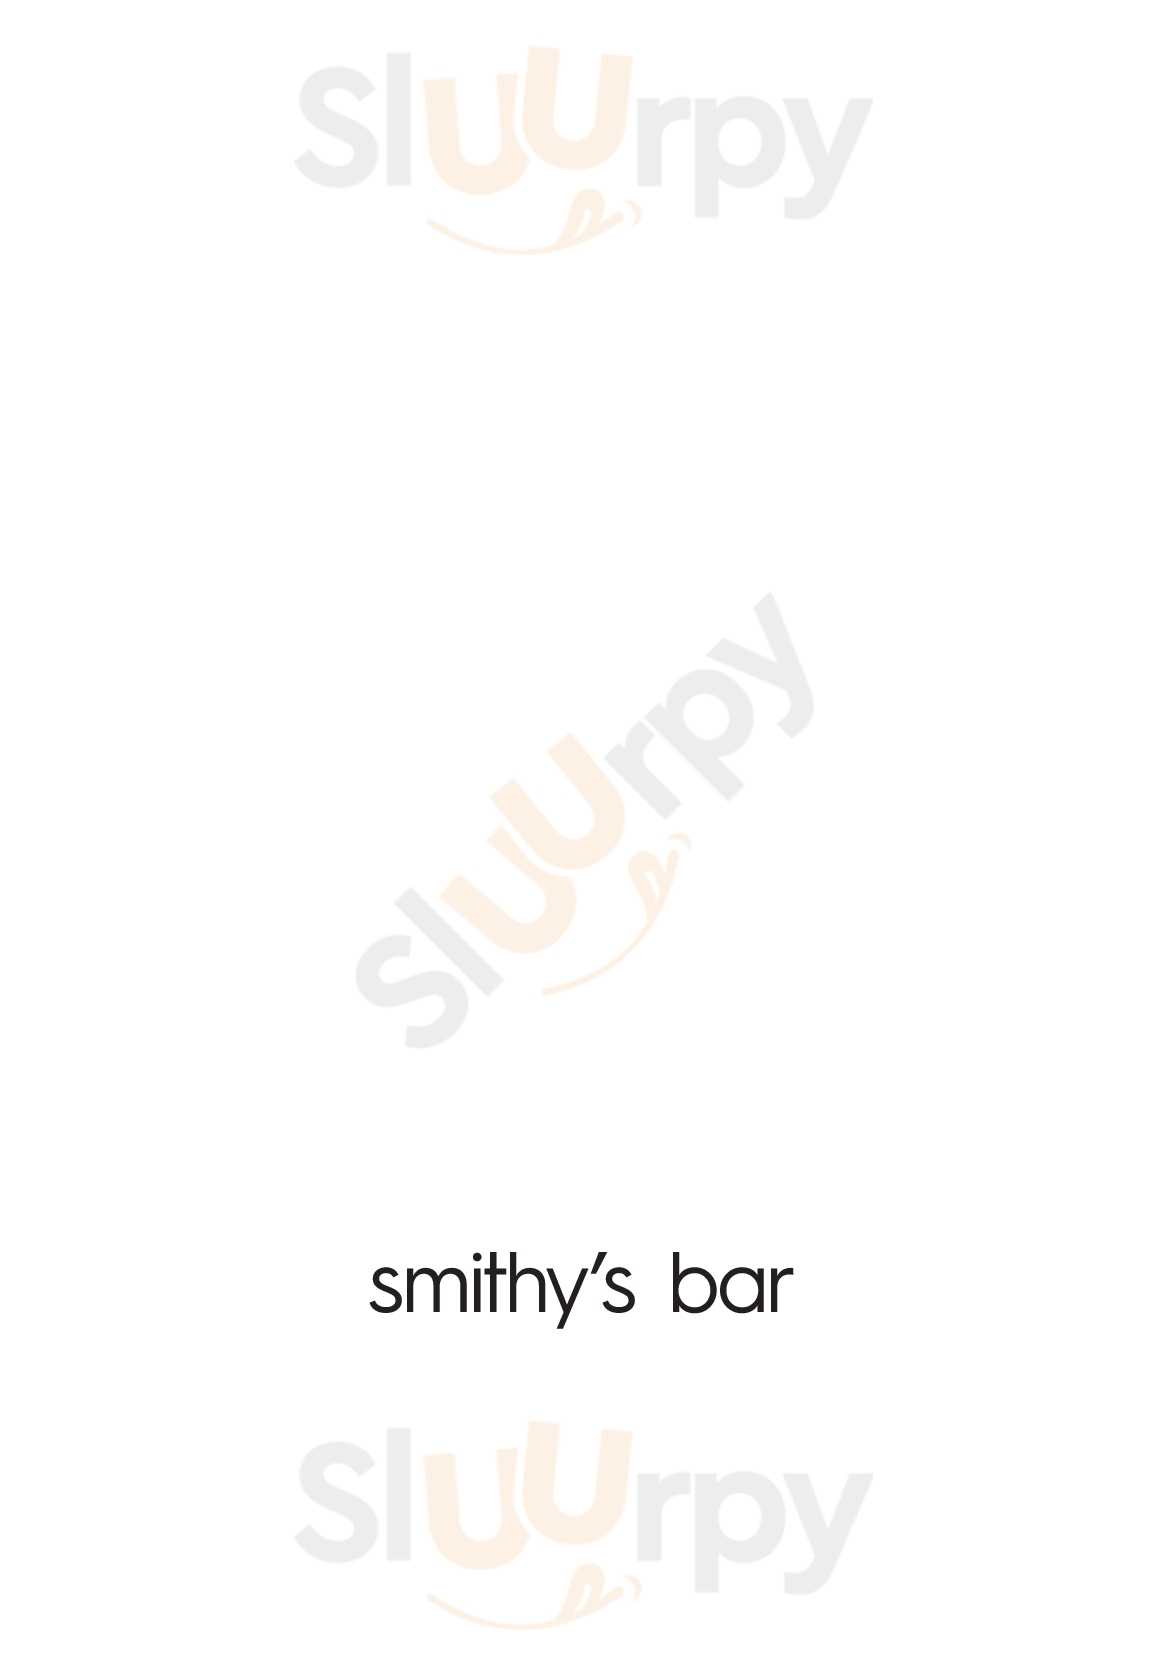 Smithy’s Bar Mascot Menu - 1